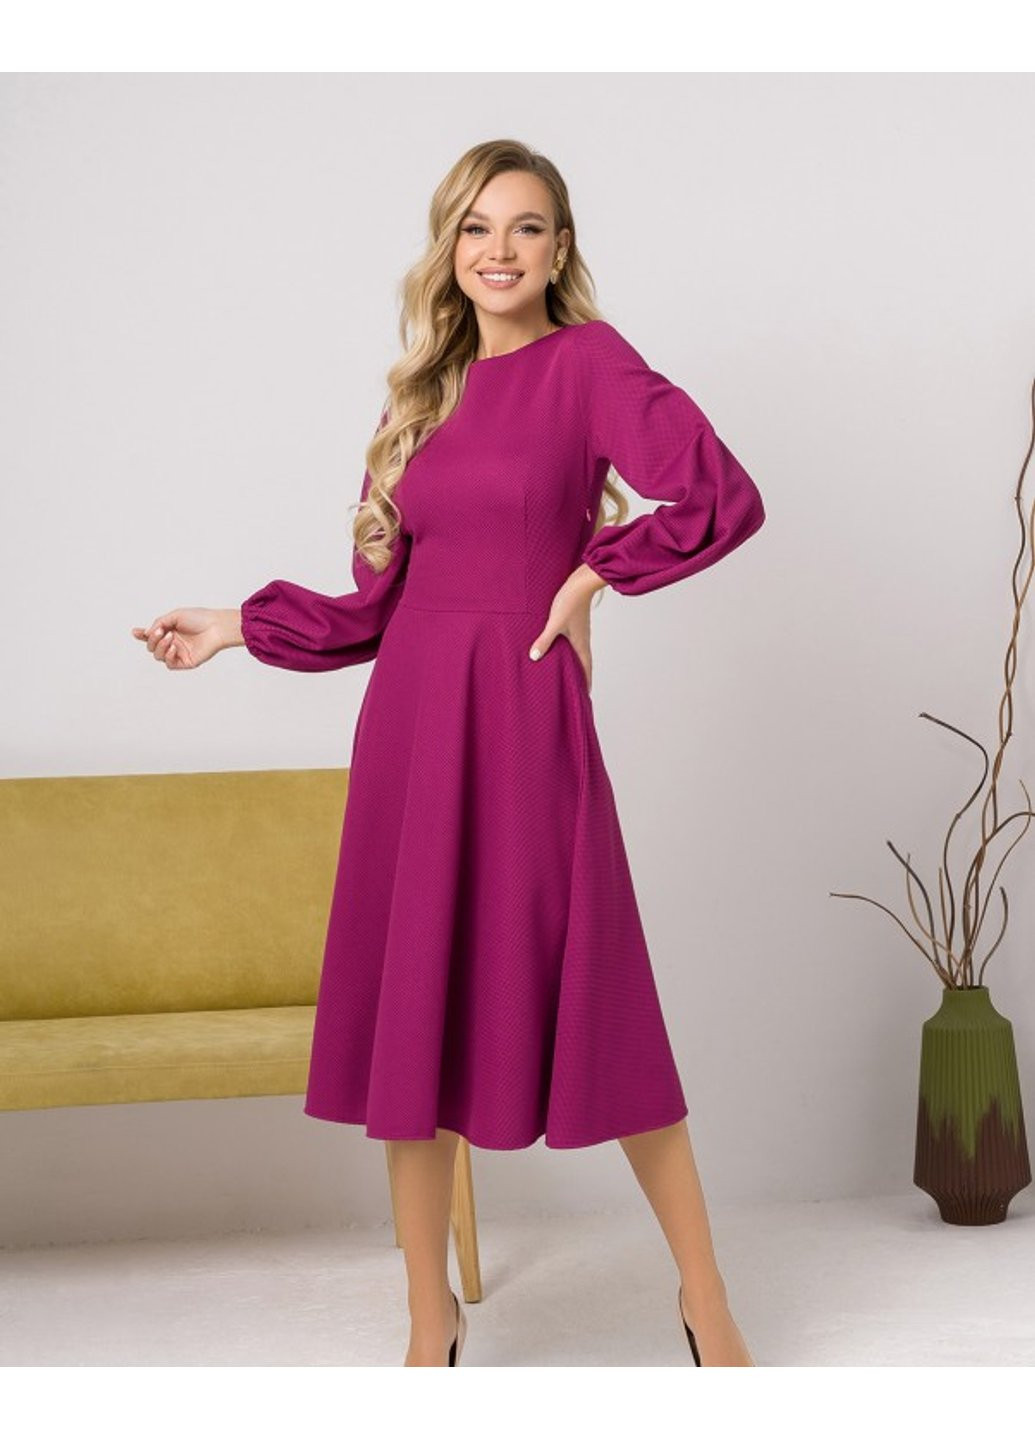 Малиновое деловое платье 12423 l фиолетовый ISSA PLUS однотонное